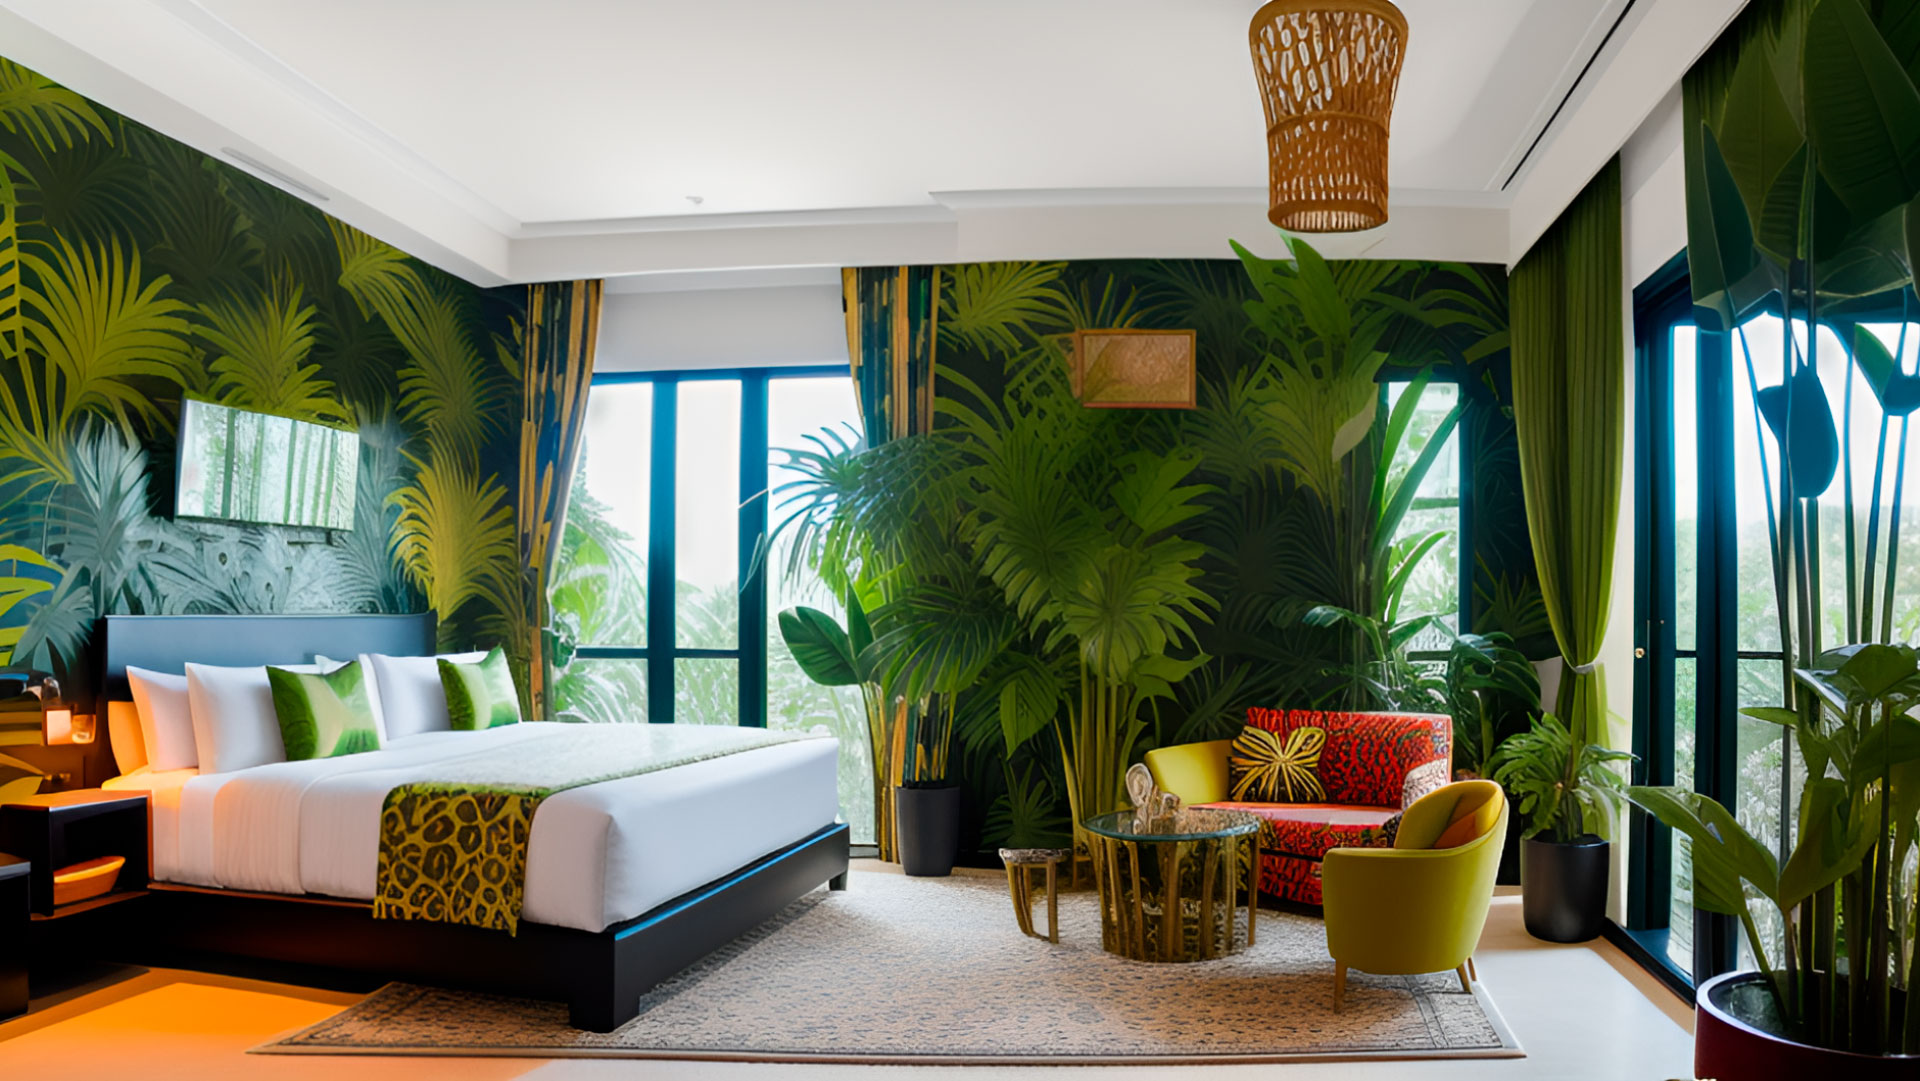 Interior design: a jungle hotel room